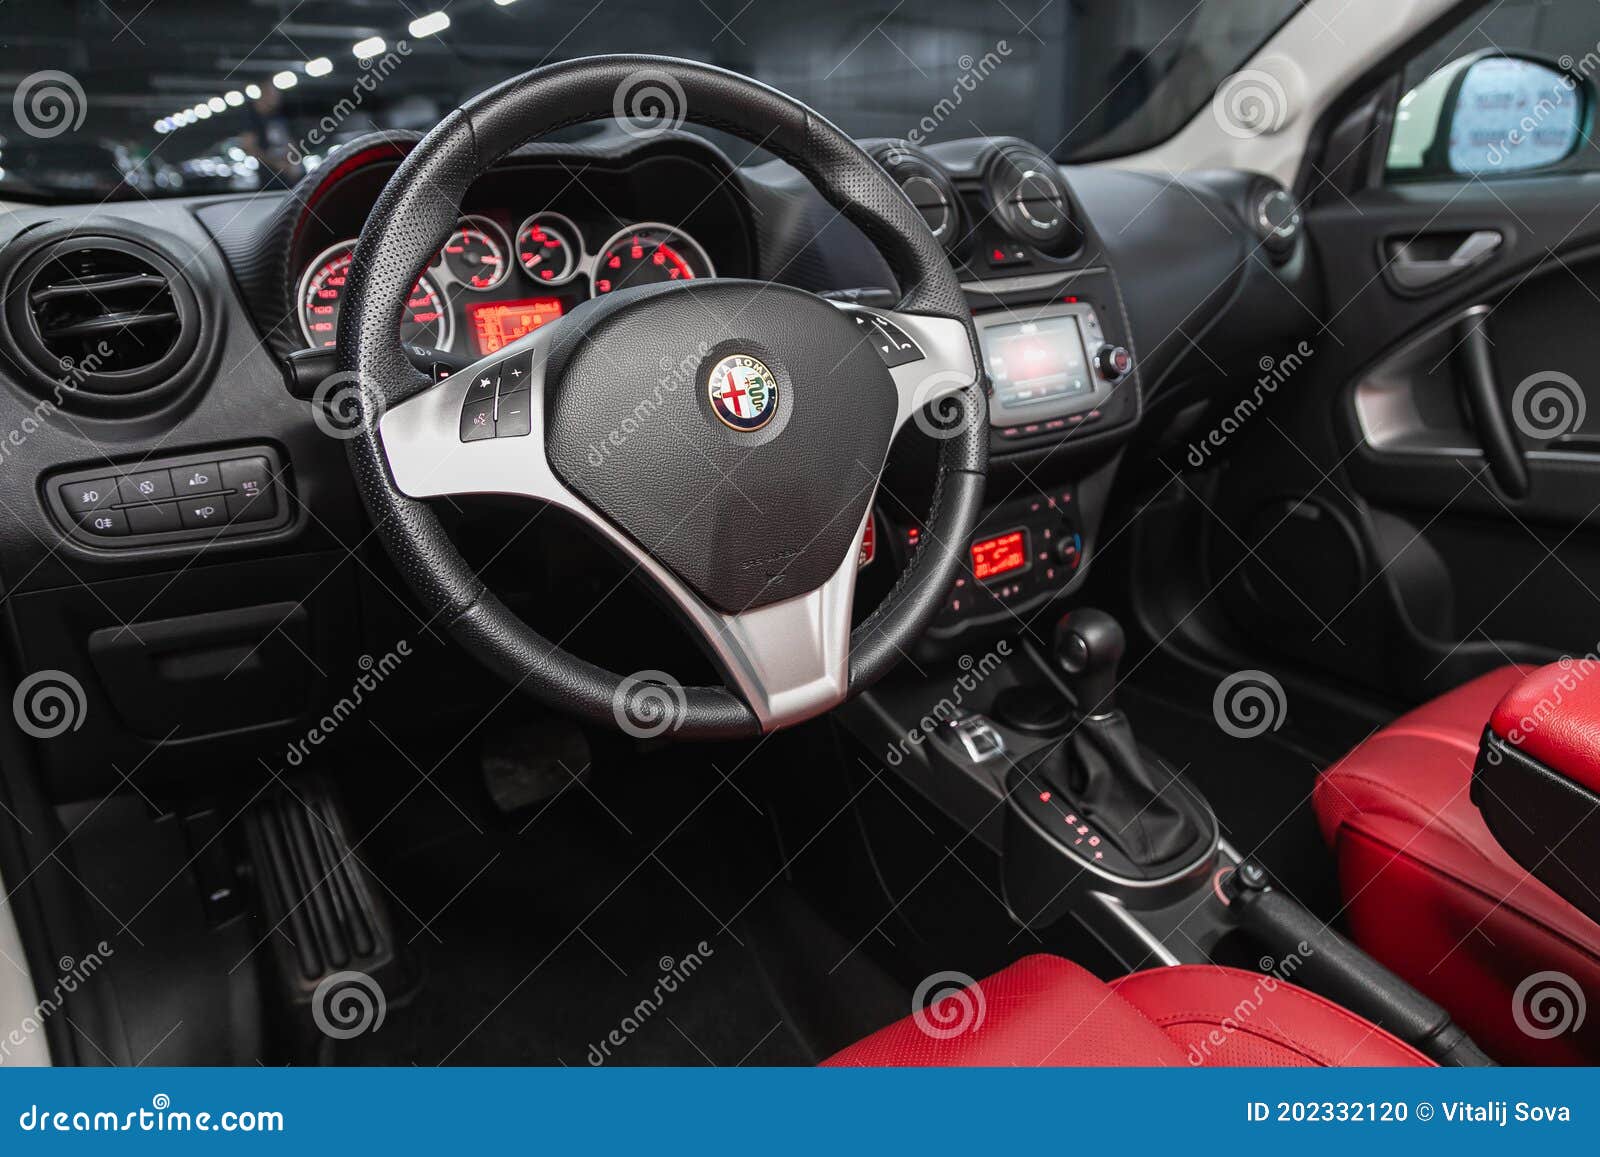 Novosibirsk, Russia â€“ November 16, 2020: Alfa Romeo Mito